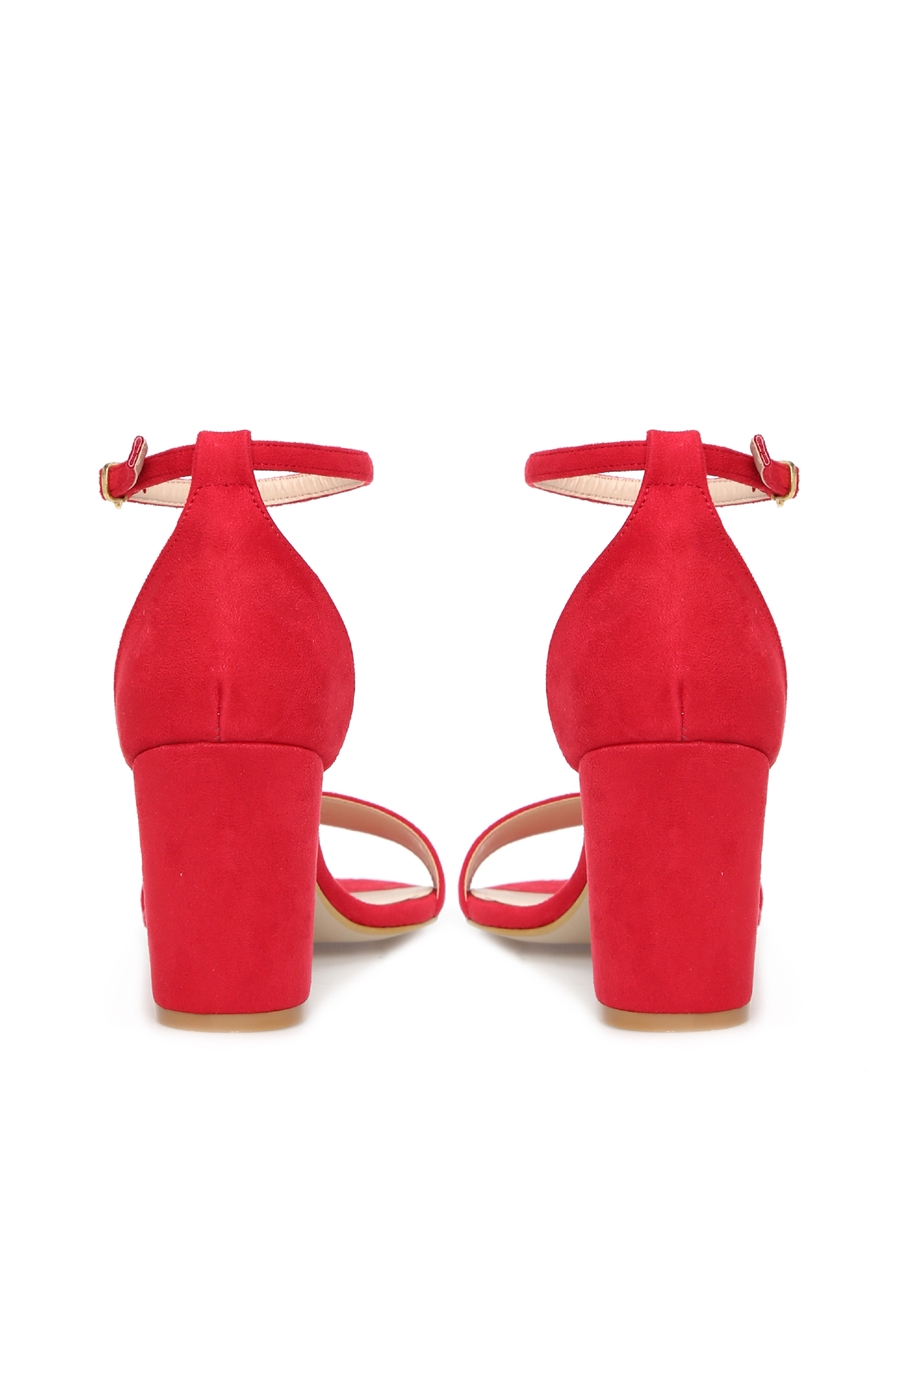 Kırmızı Kadın Sandalet